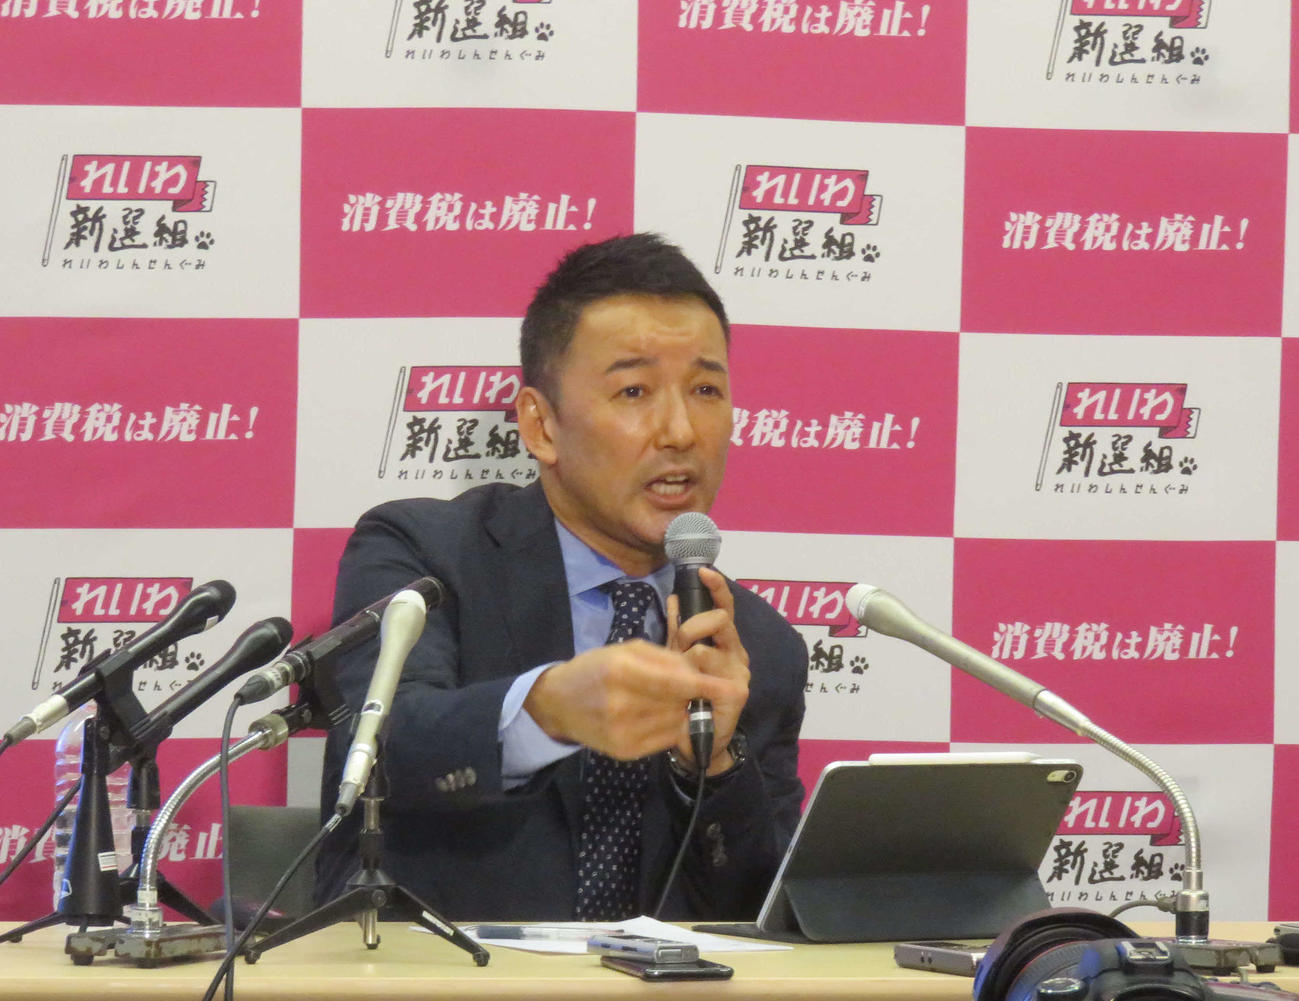 東京都知事選にれいわ新撰組公認で出馬表明した山本太郎代表